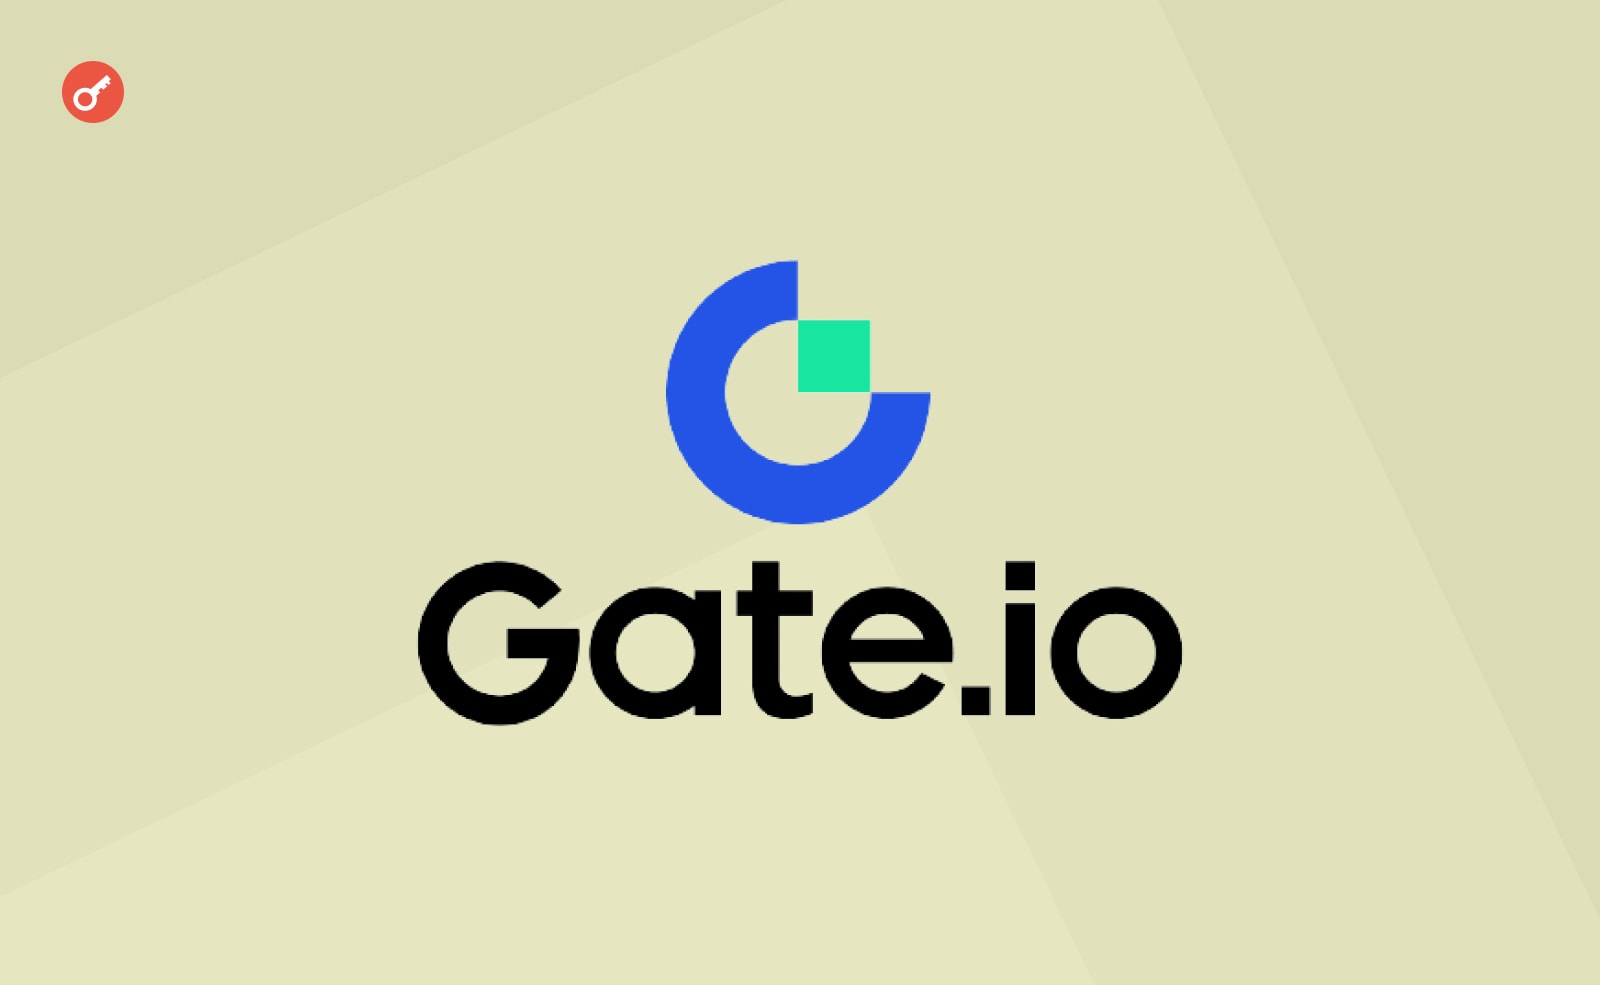 Gate.io випустили нову криптокарту Visa для Єврозони. Головний колаж новини.